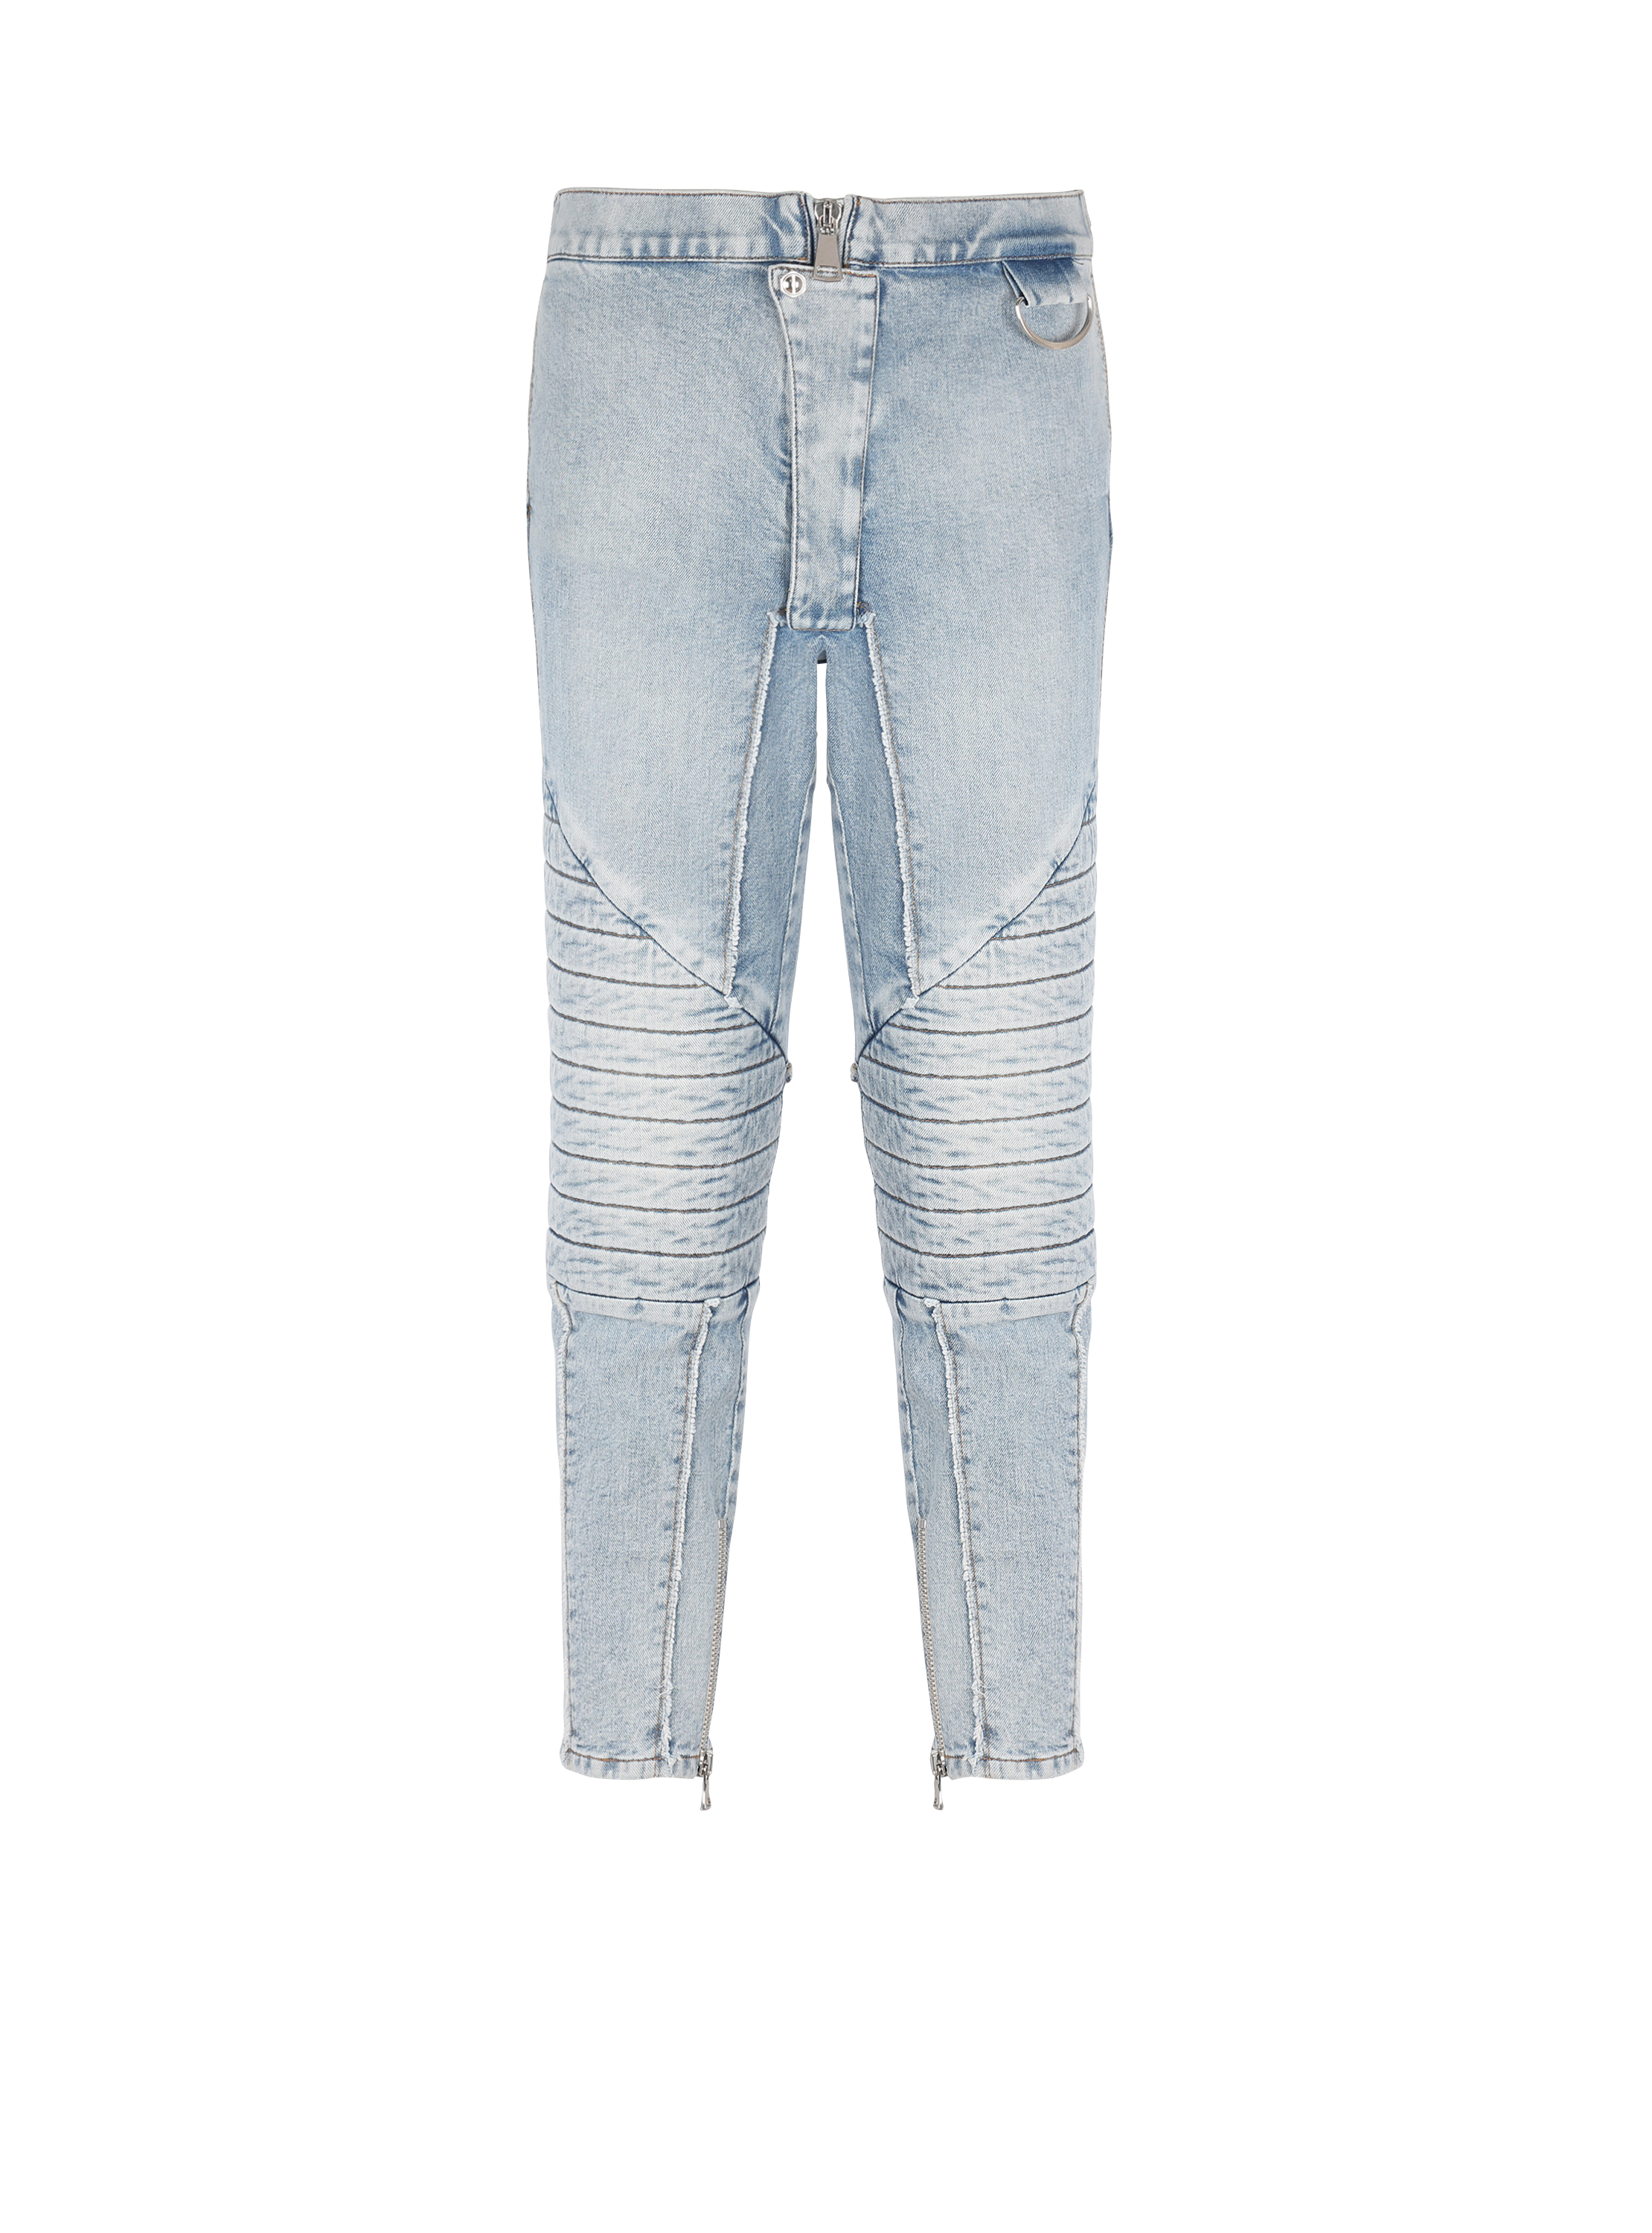 Mode Spijkerbroeken Slim jeans Balmain Slim jeans wit-zwart gestreept patroon casual uitstraling 